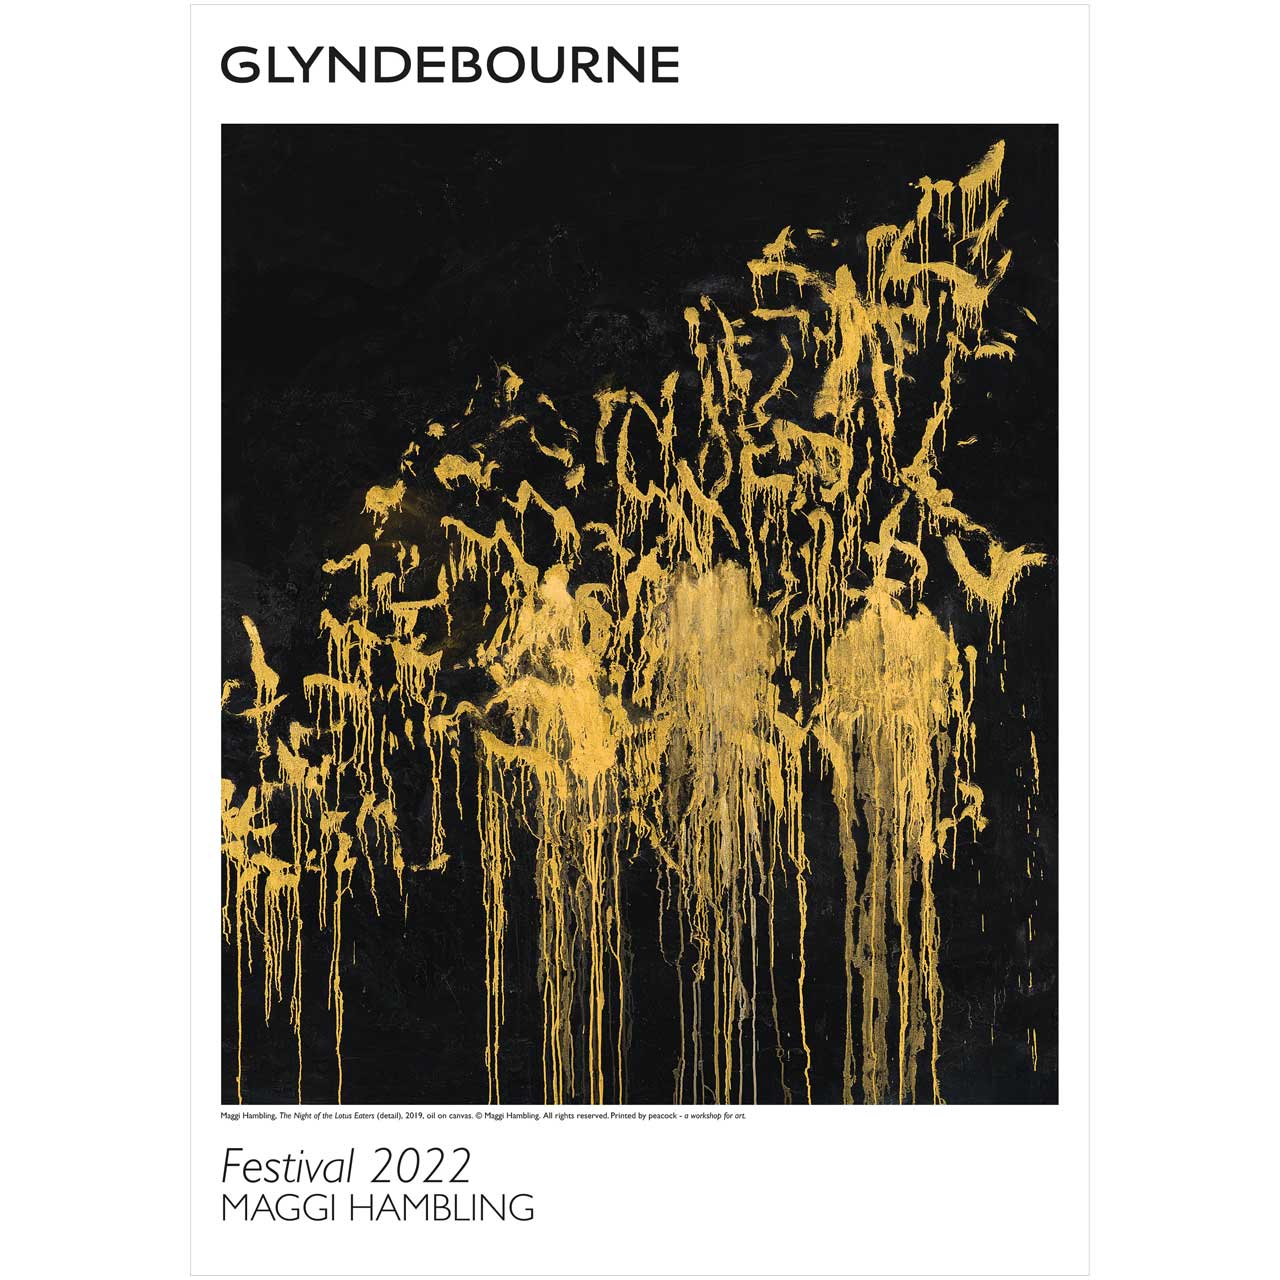 Glyndebourne Festival 2022 Poster by Maggi Hambling Glyndebourne Shop